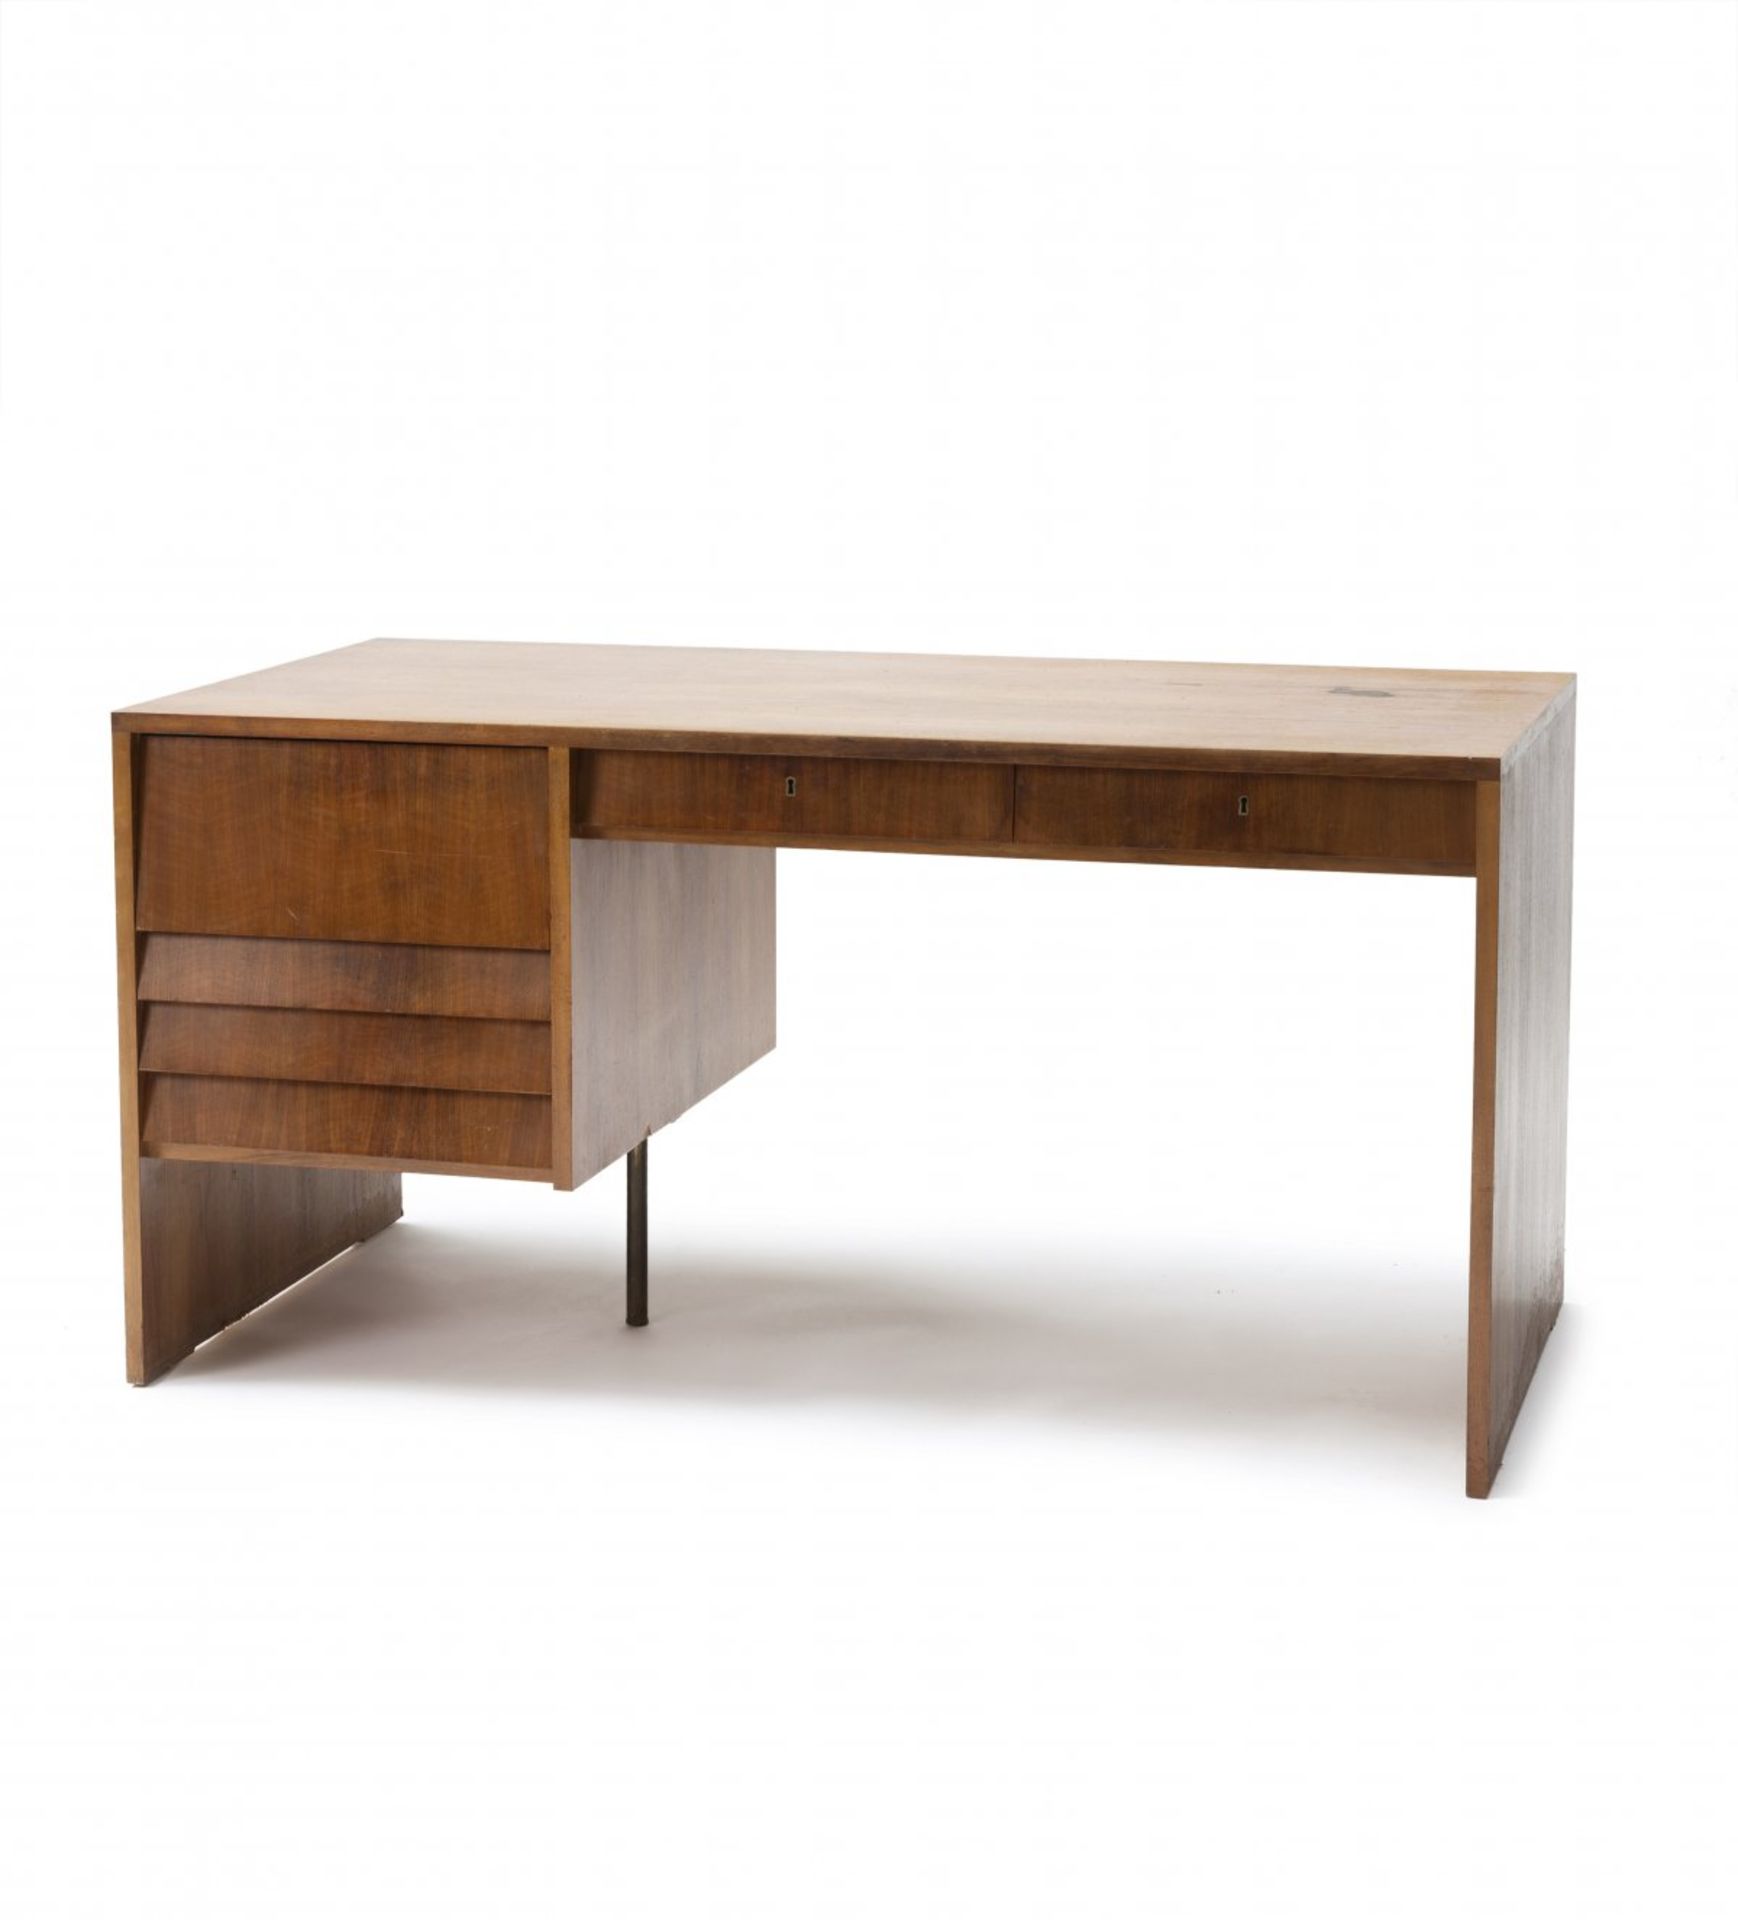 Otl Aicher, Desk, c. 1955Desk, c. 1955H. 75 x 149 x 74.5 cm. Wooden construction, plywood, - Bild 2 aus 4